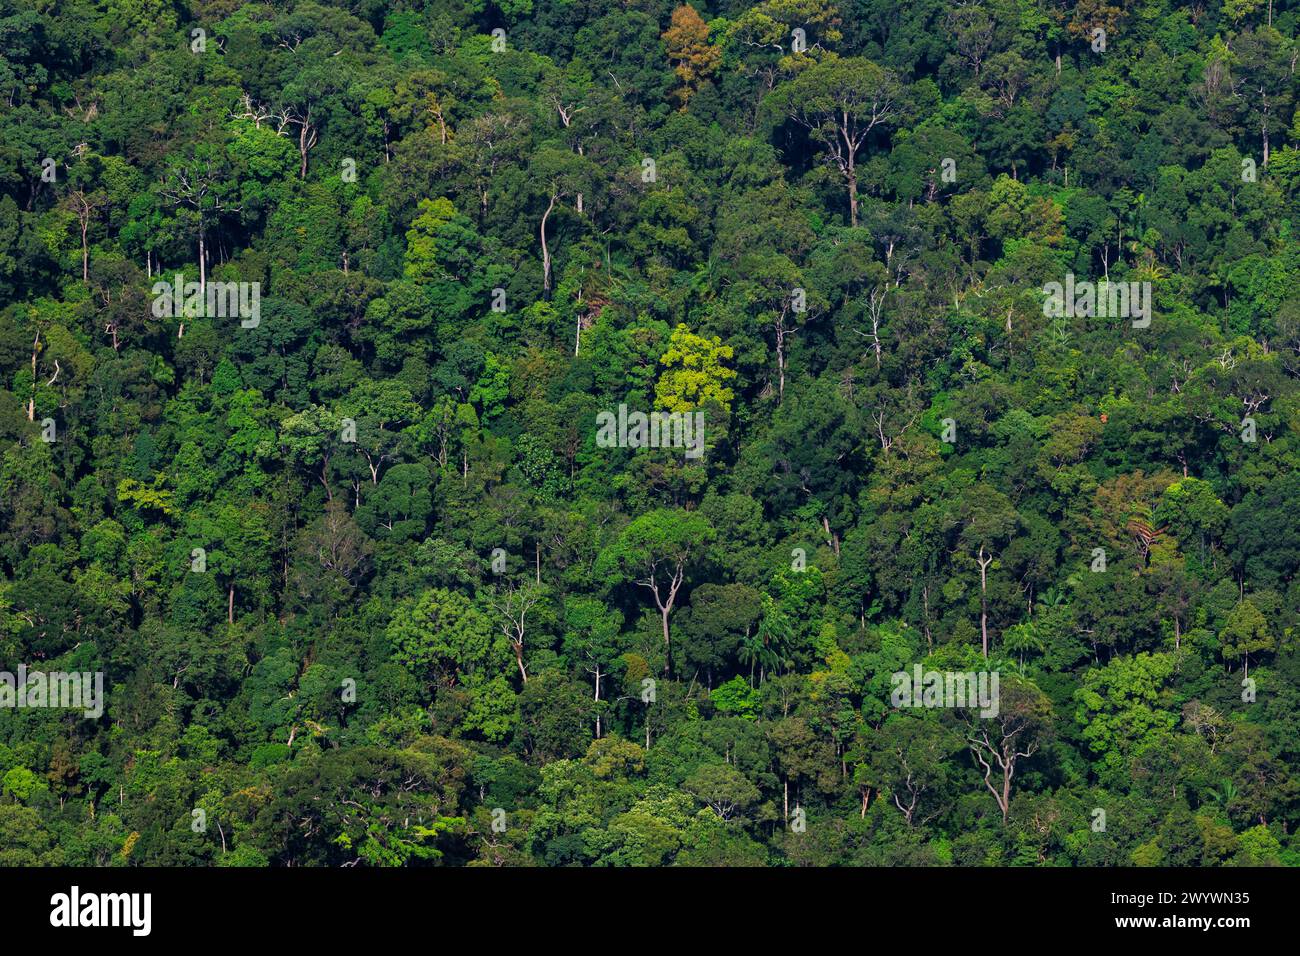 La lussureggiante foresta verde dell'isola di Langkawi in Malesia, con alberi di varie dimensioni, densamente affollati, vista dalla funivia che sale al ponte sospeso. Foto Stock